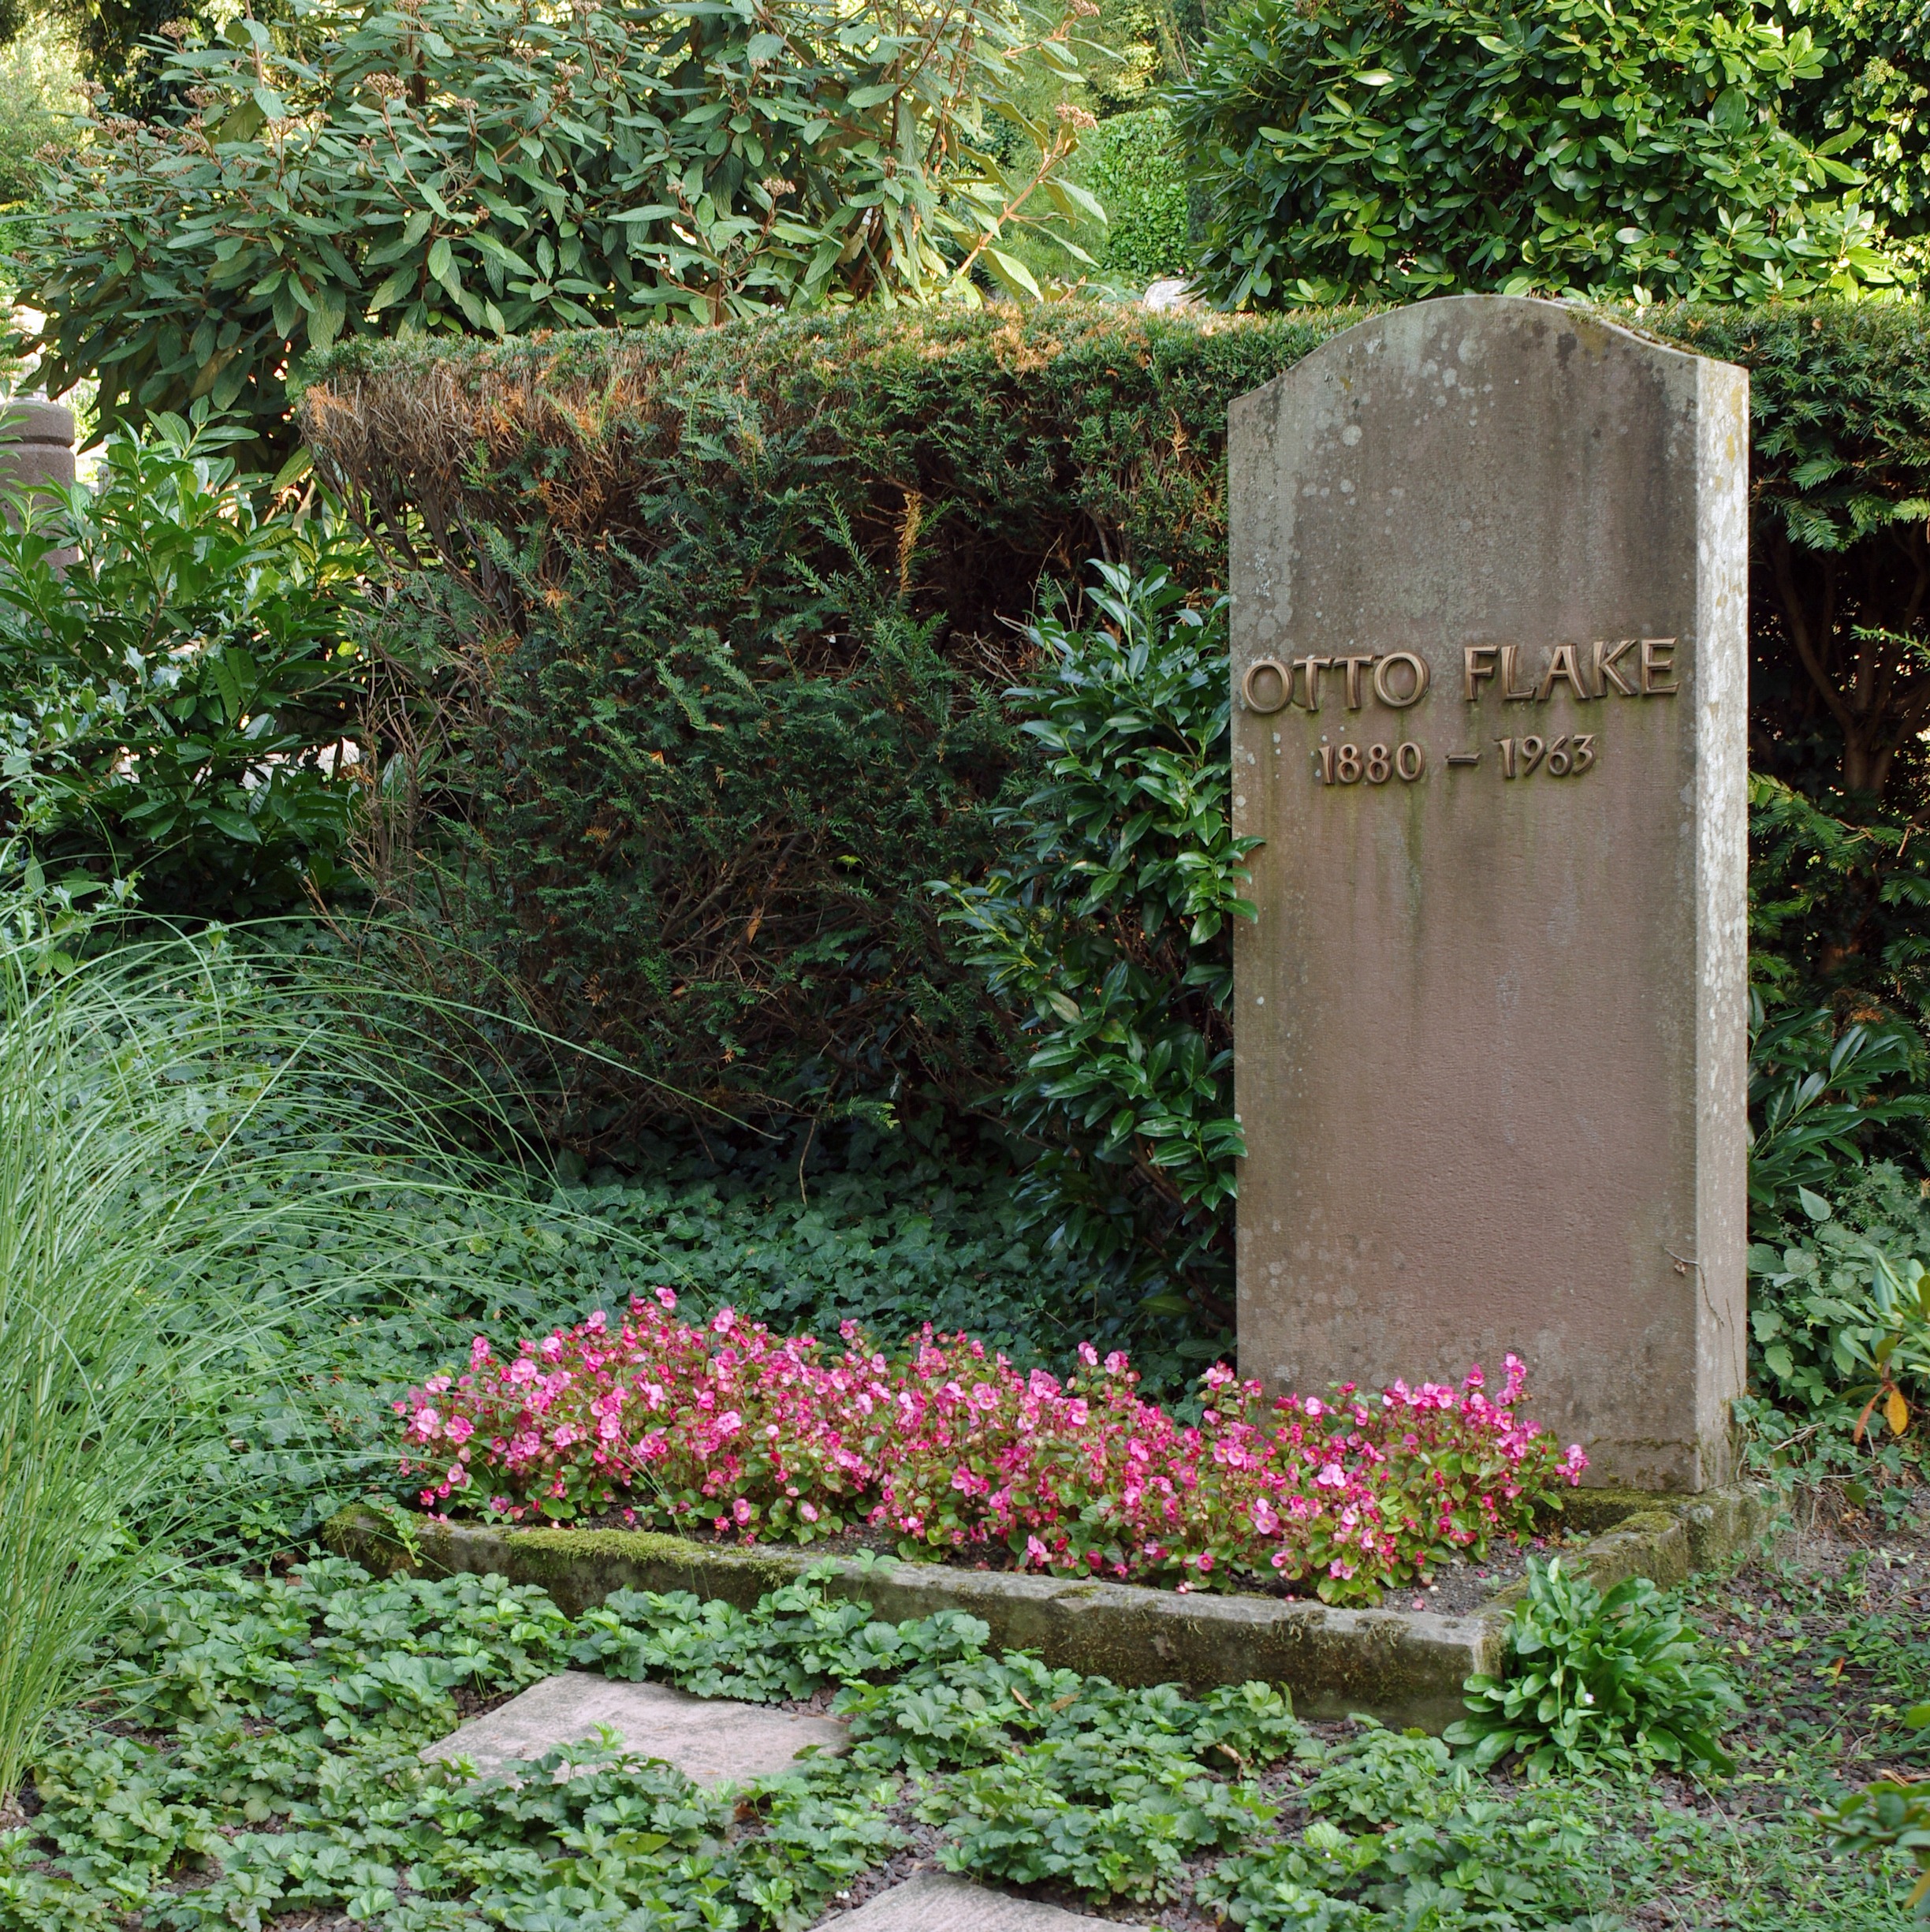 Flake's grave site in [[Baden-Baden